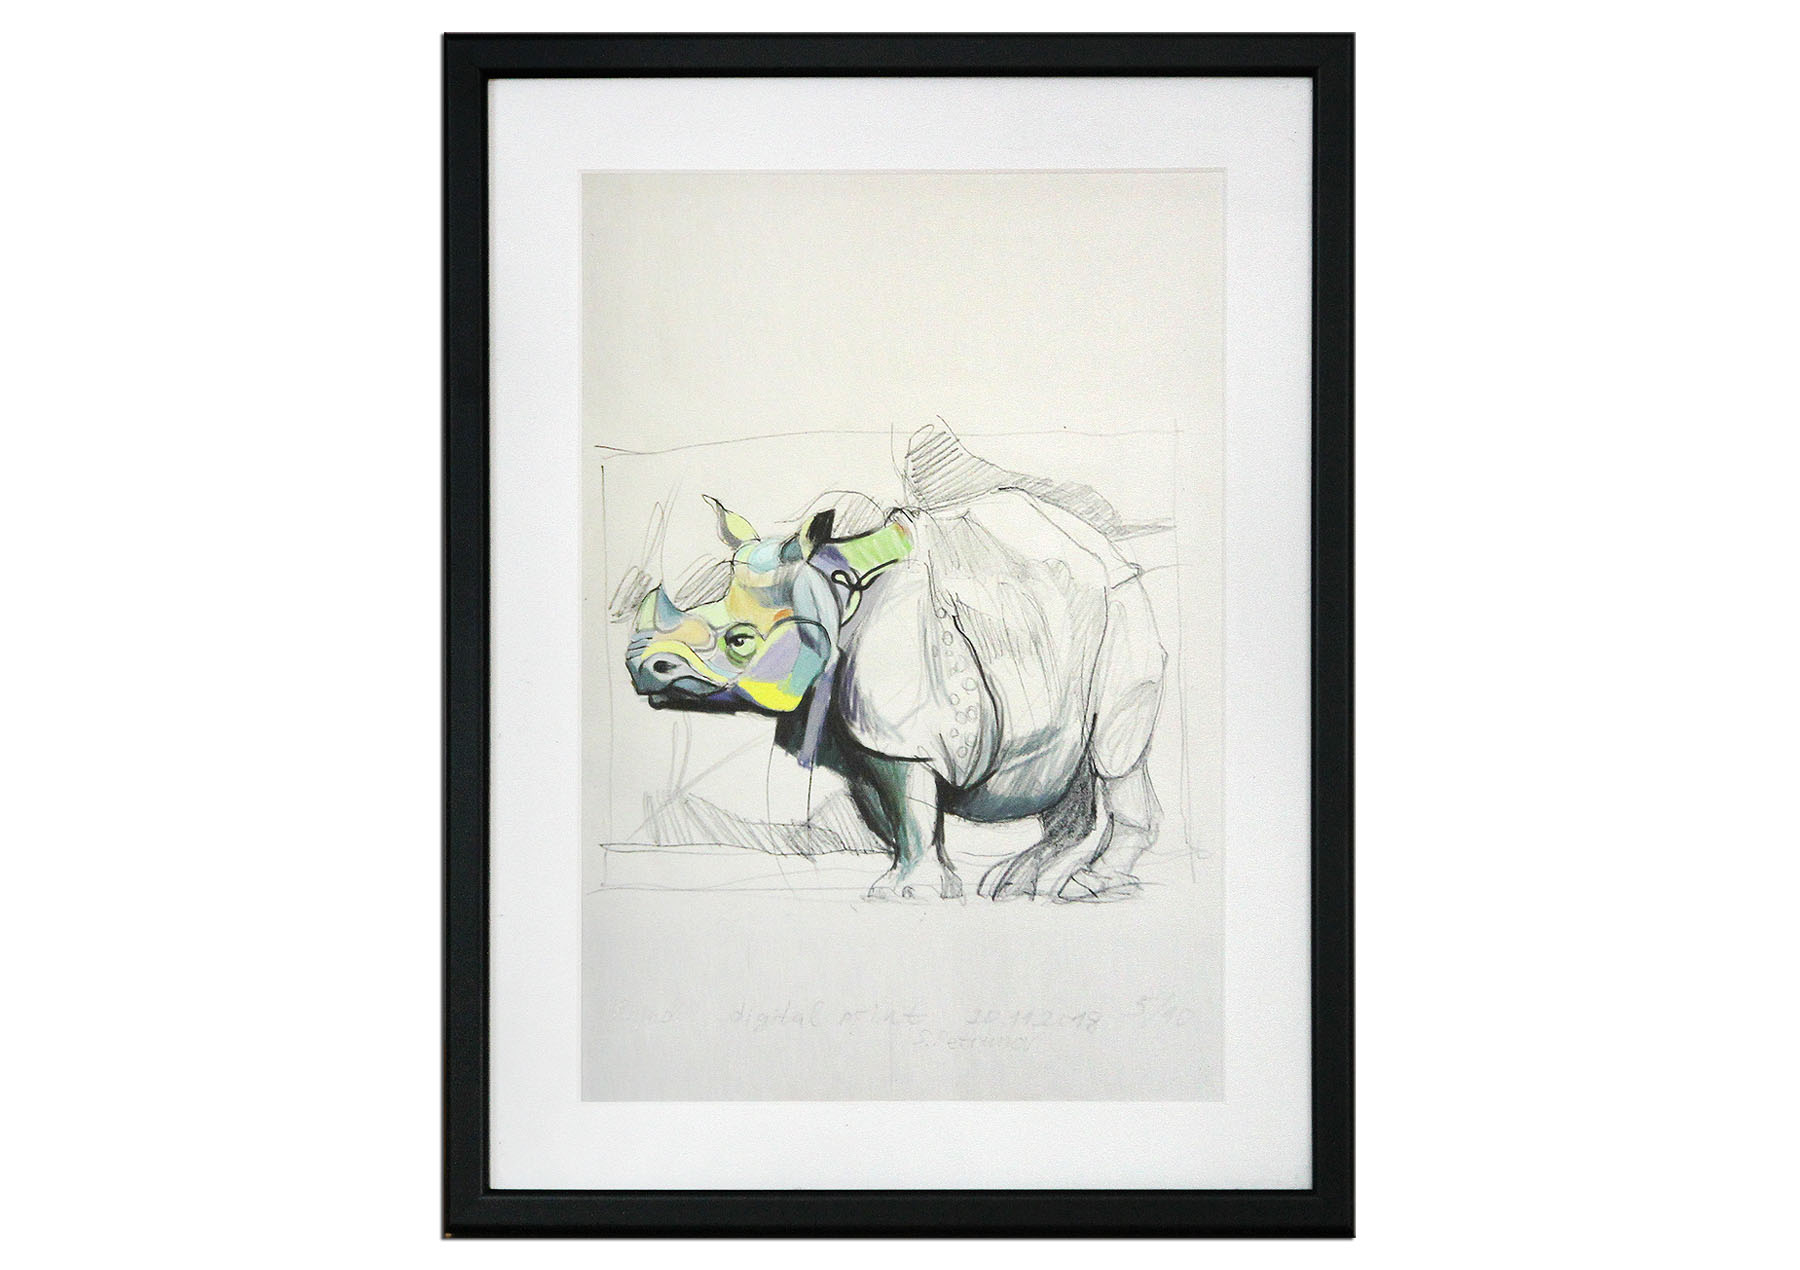 Limitierter Kunstdruck, Stefan Petrunov: "Rhino 2"